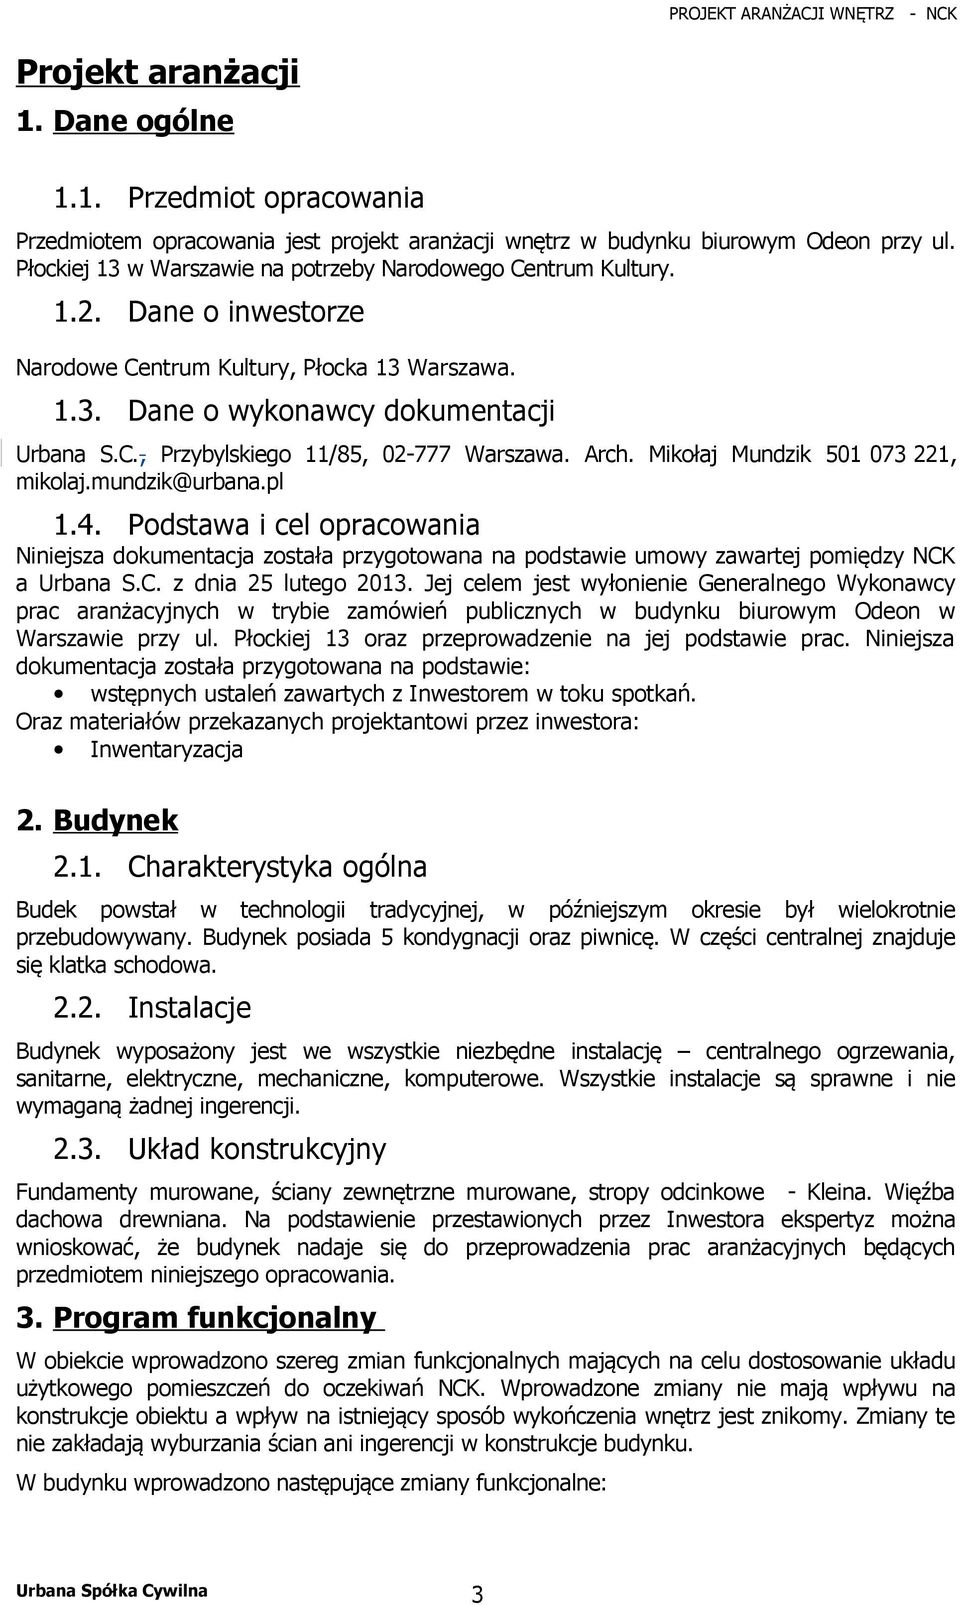 Arch. Mikołaj Mundzik 501 073 221, mikolaj.mundzik@urbana.pl 1.4. Podstawa i cel opracowania Niniejsza dokumentacja została przygotowana na podstawie umowy zawartej pomiędzy NCK a Urbana S.C. z dnia 25 lutego 2013.